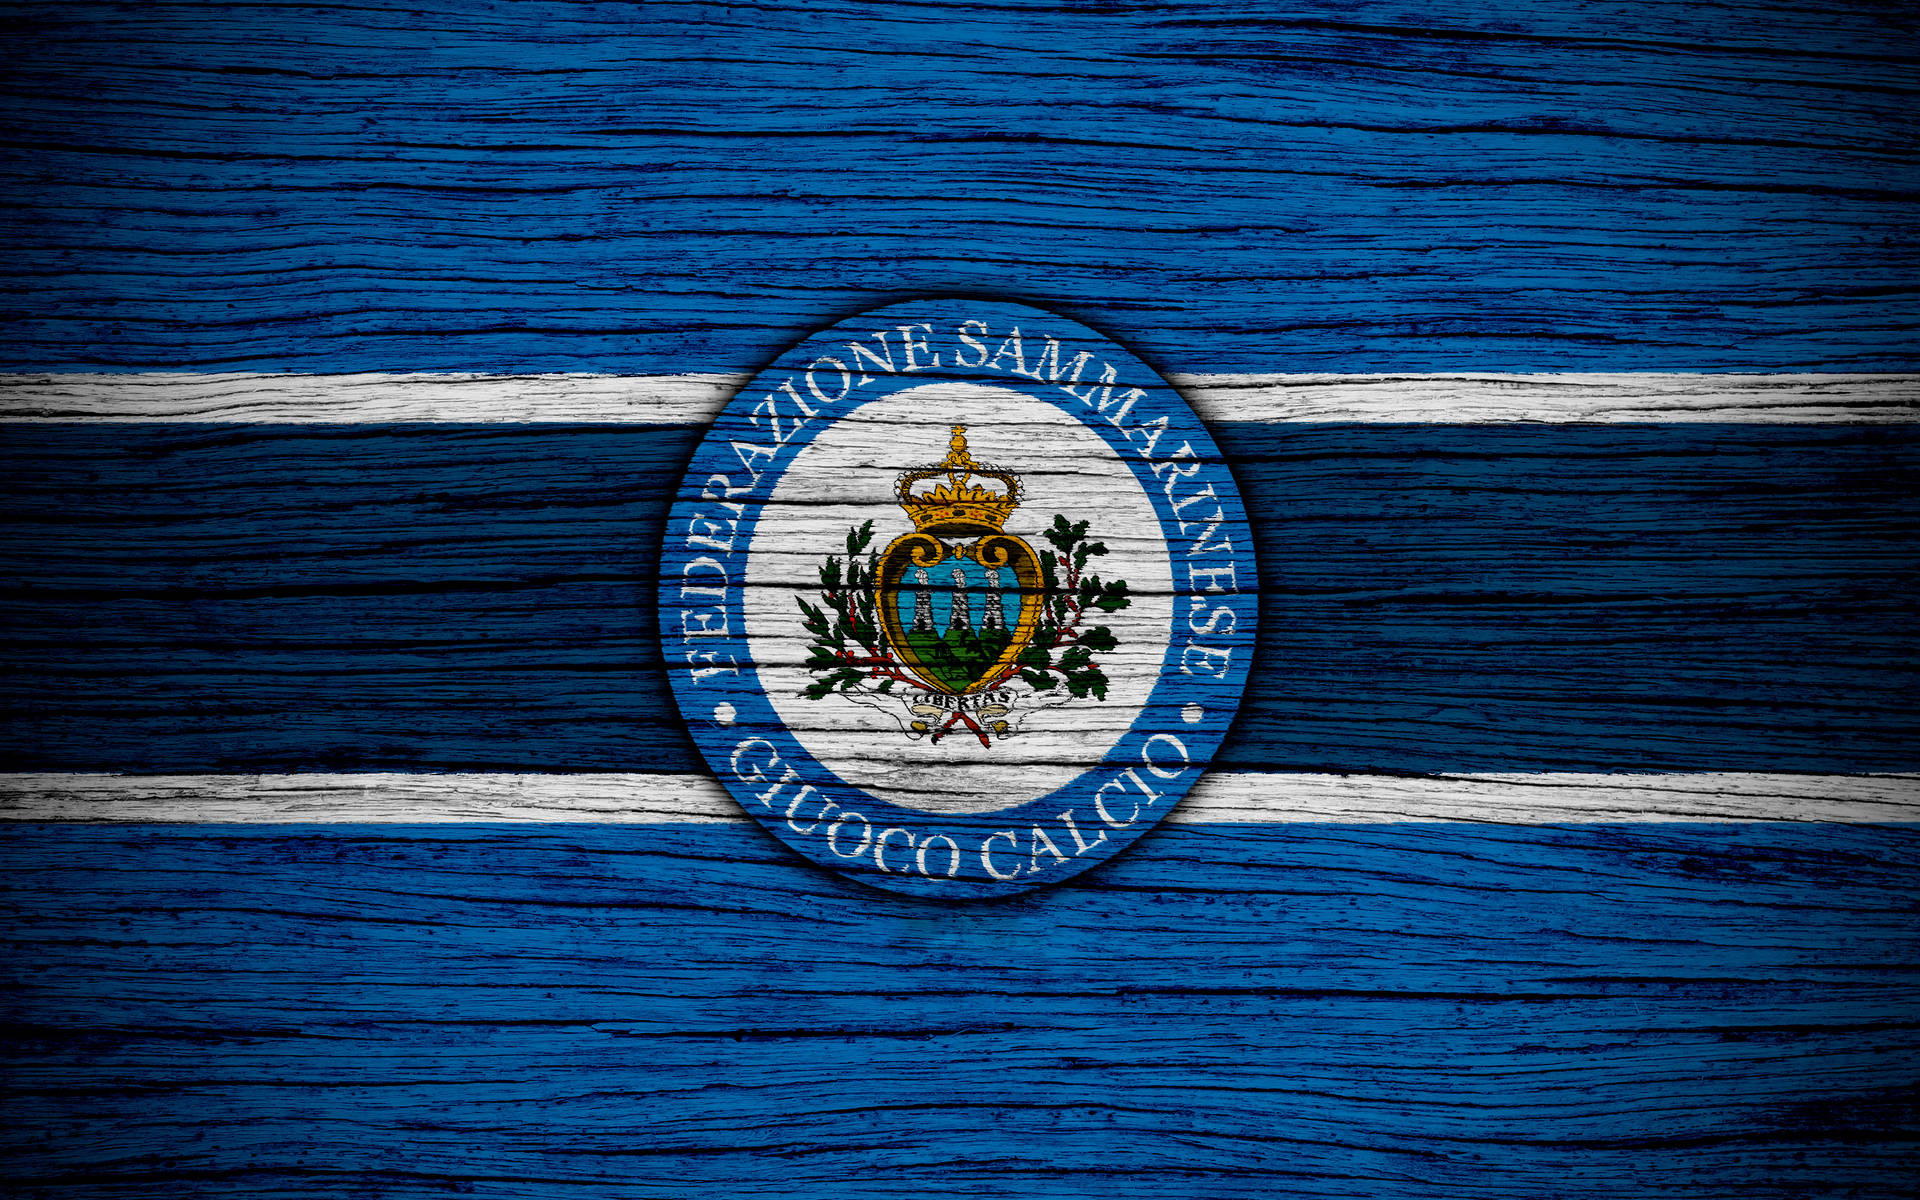 Banderade San Marino Con Textura De Madera Fondo de pantalla